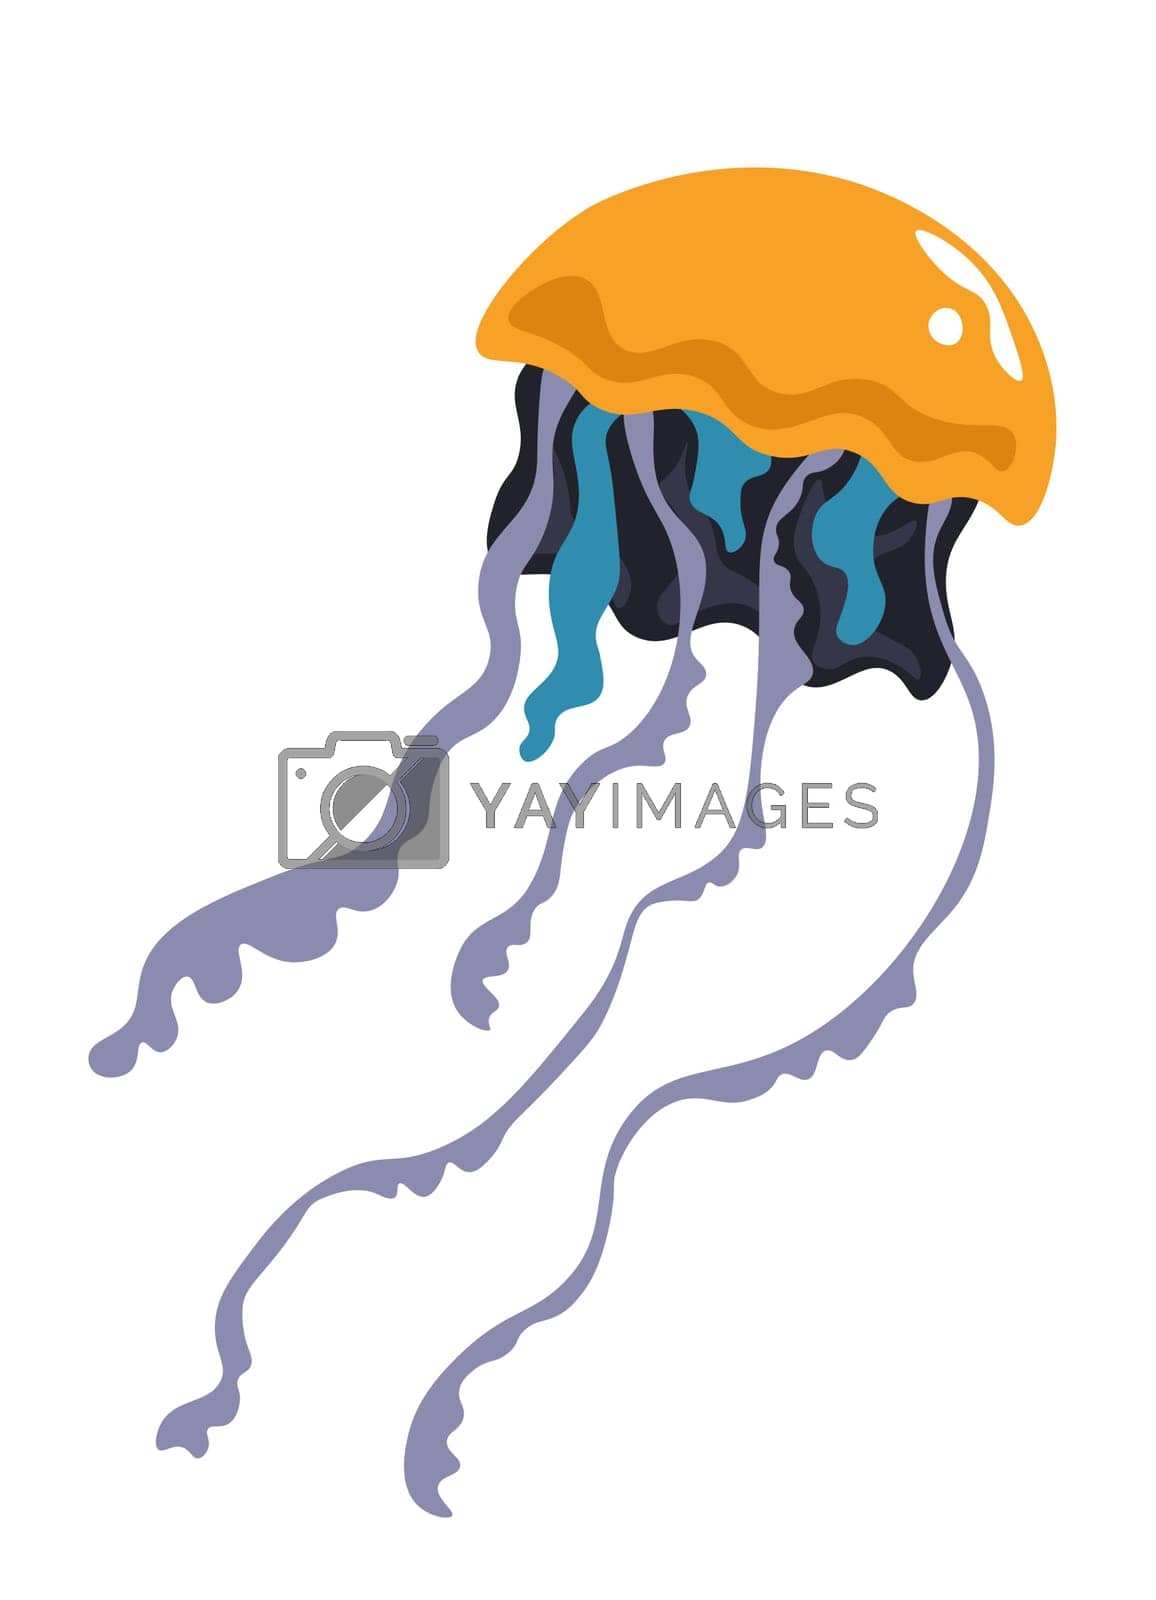 Royalty free image of Jellyfish boneless animal floating in sea or ocean by Sonulkaster